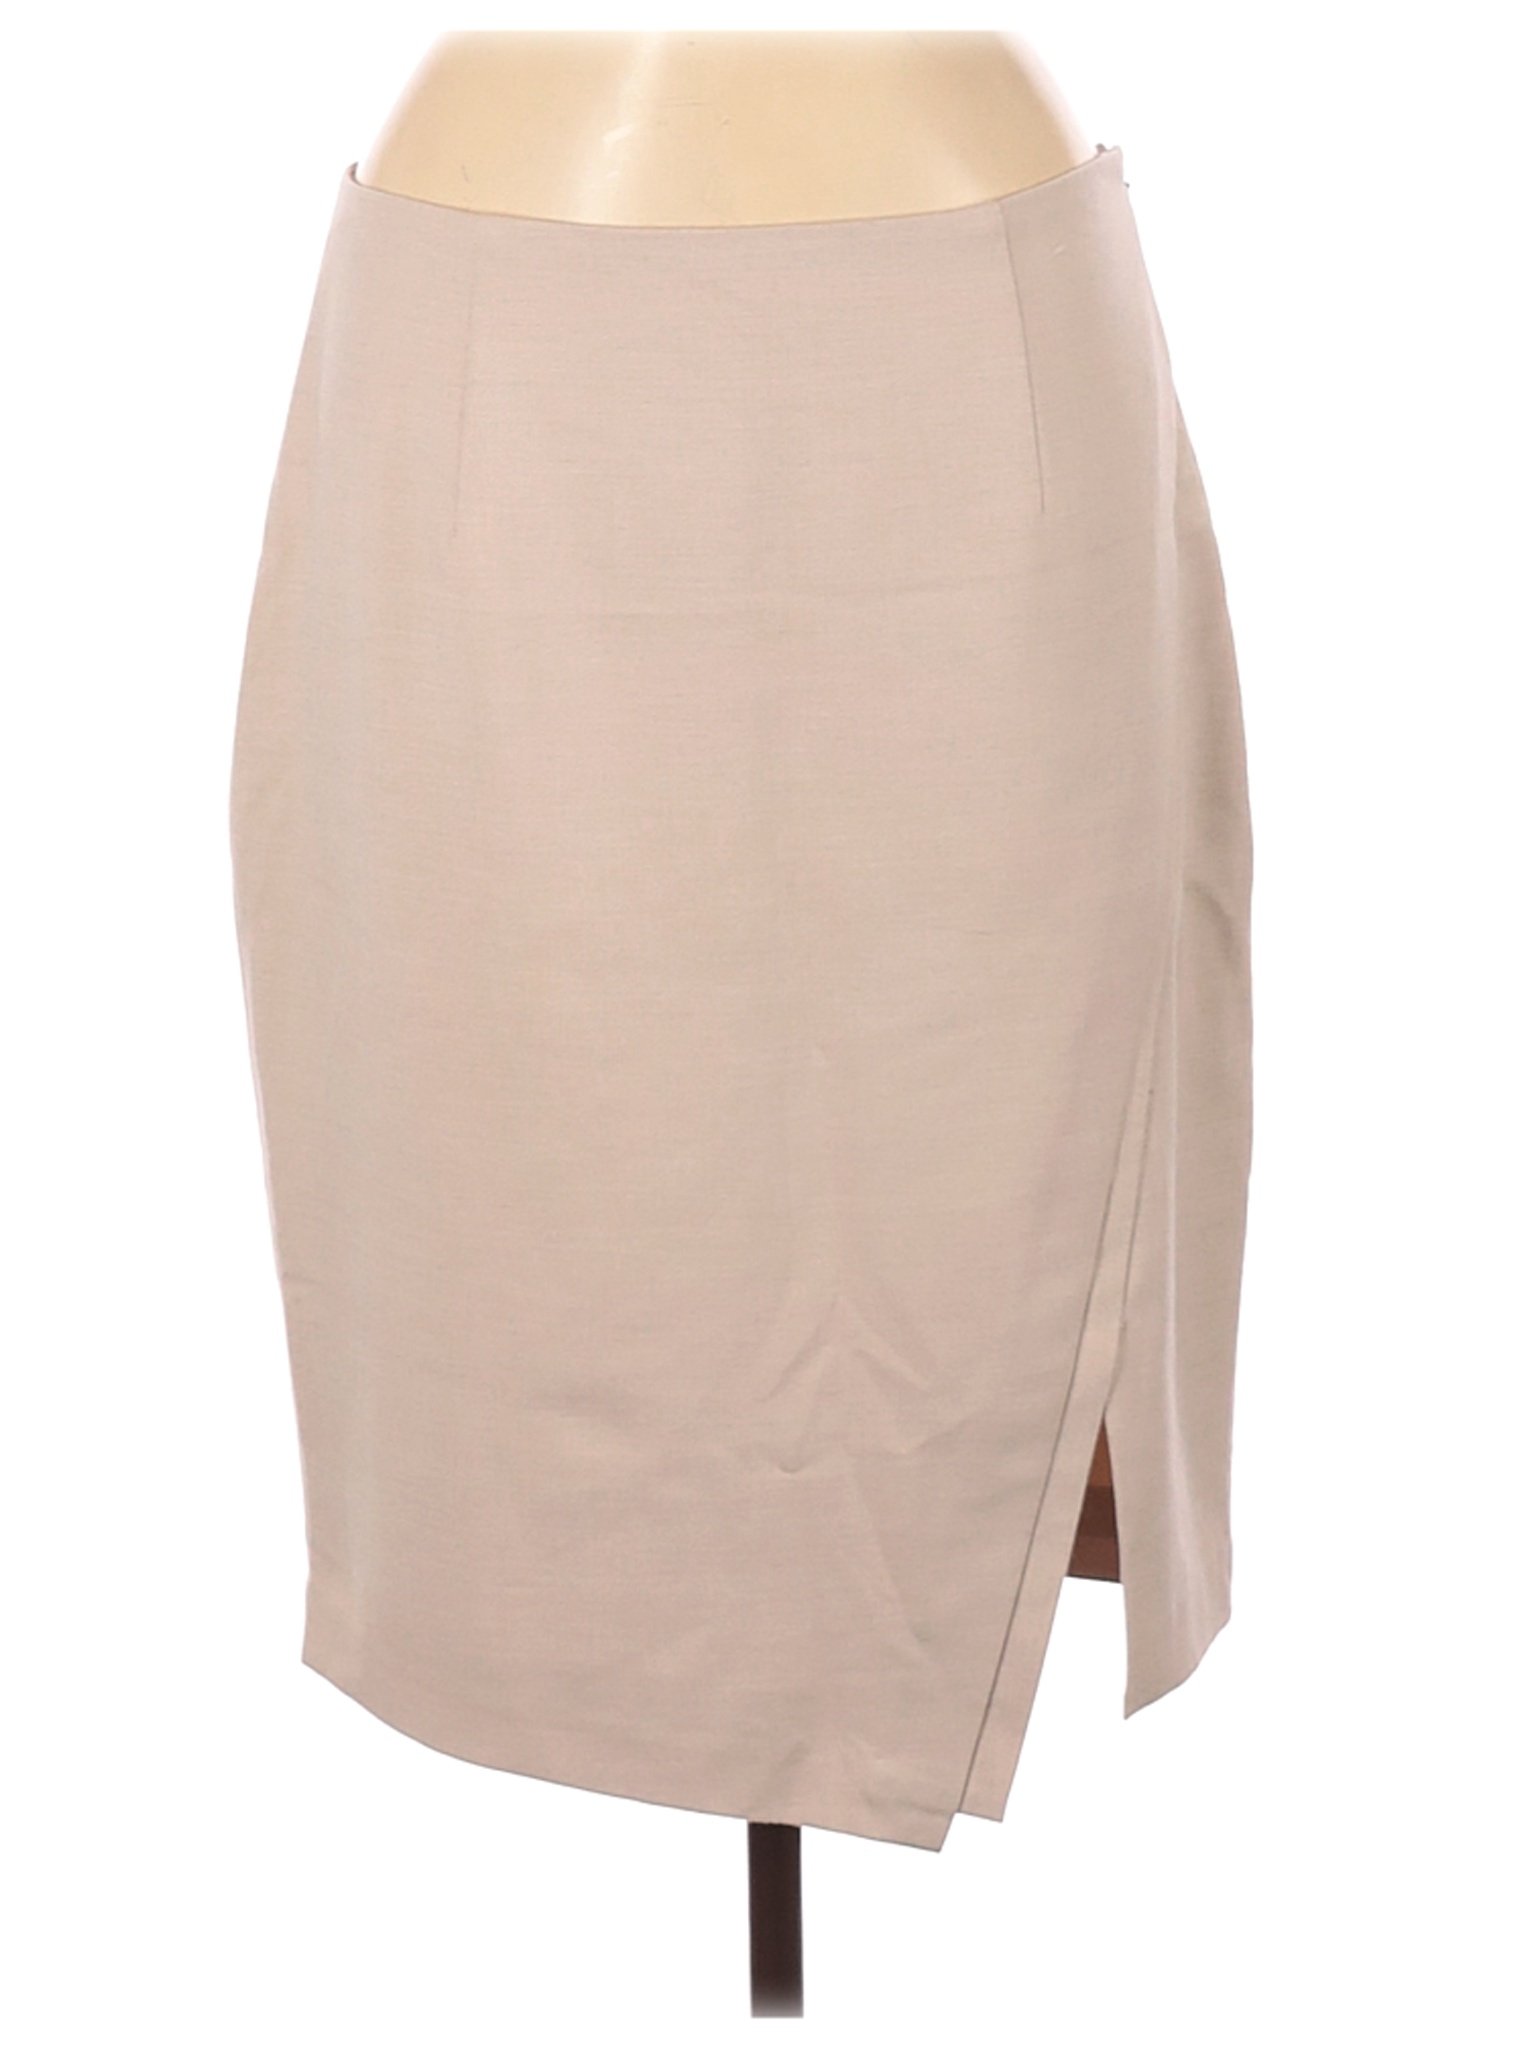 White House Black Market Women Brown Casual Skirt 8 | eBay